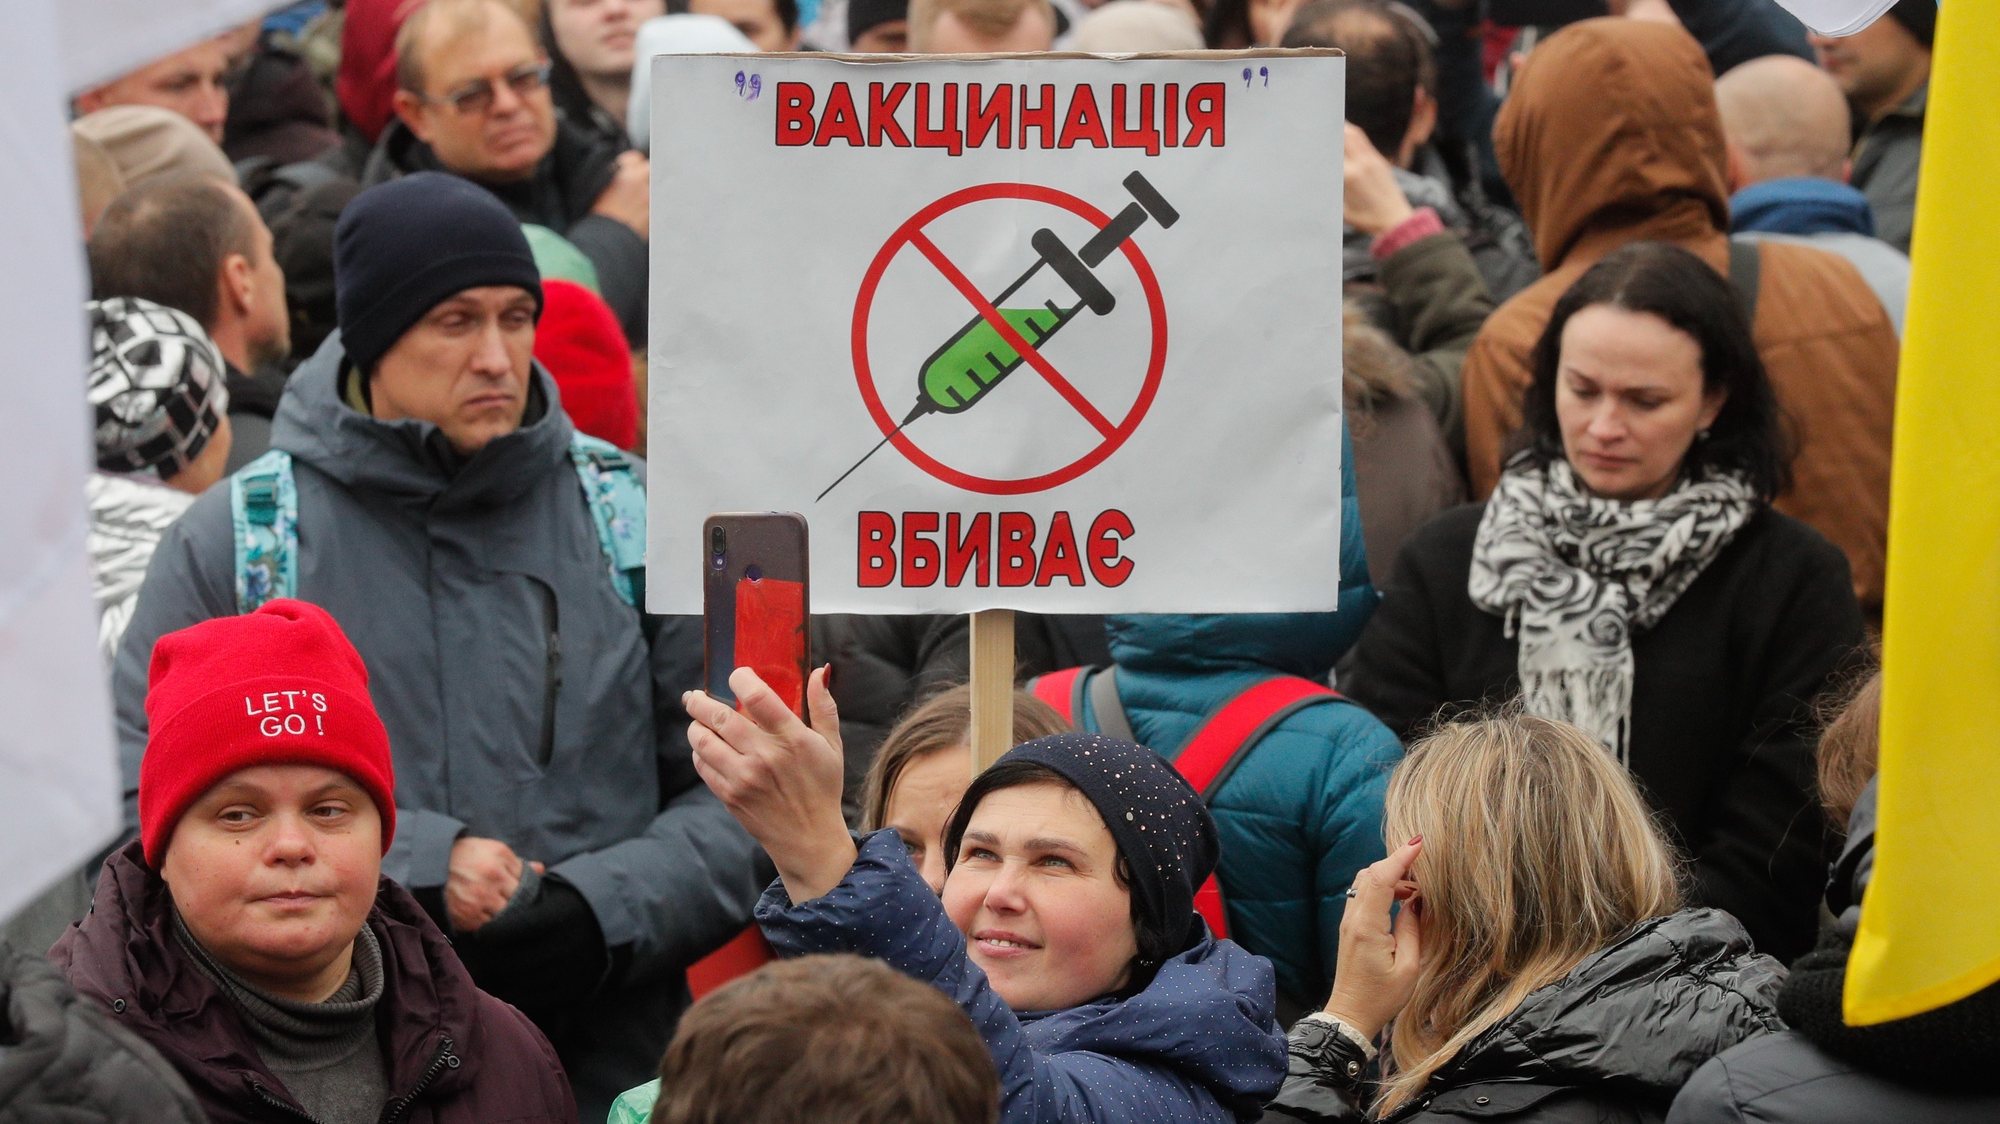 Protestos na Ucrânia, Kiev, contra o processo de vacinação e restrições inerentes à pandemia